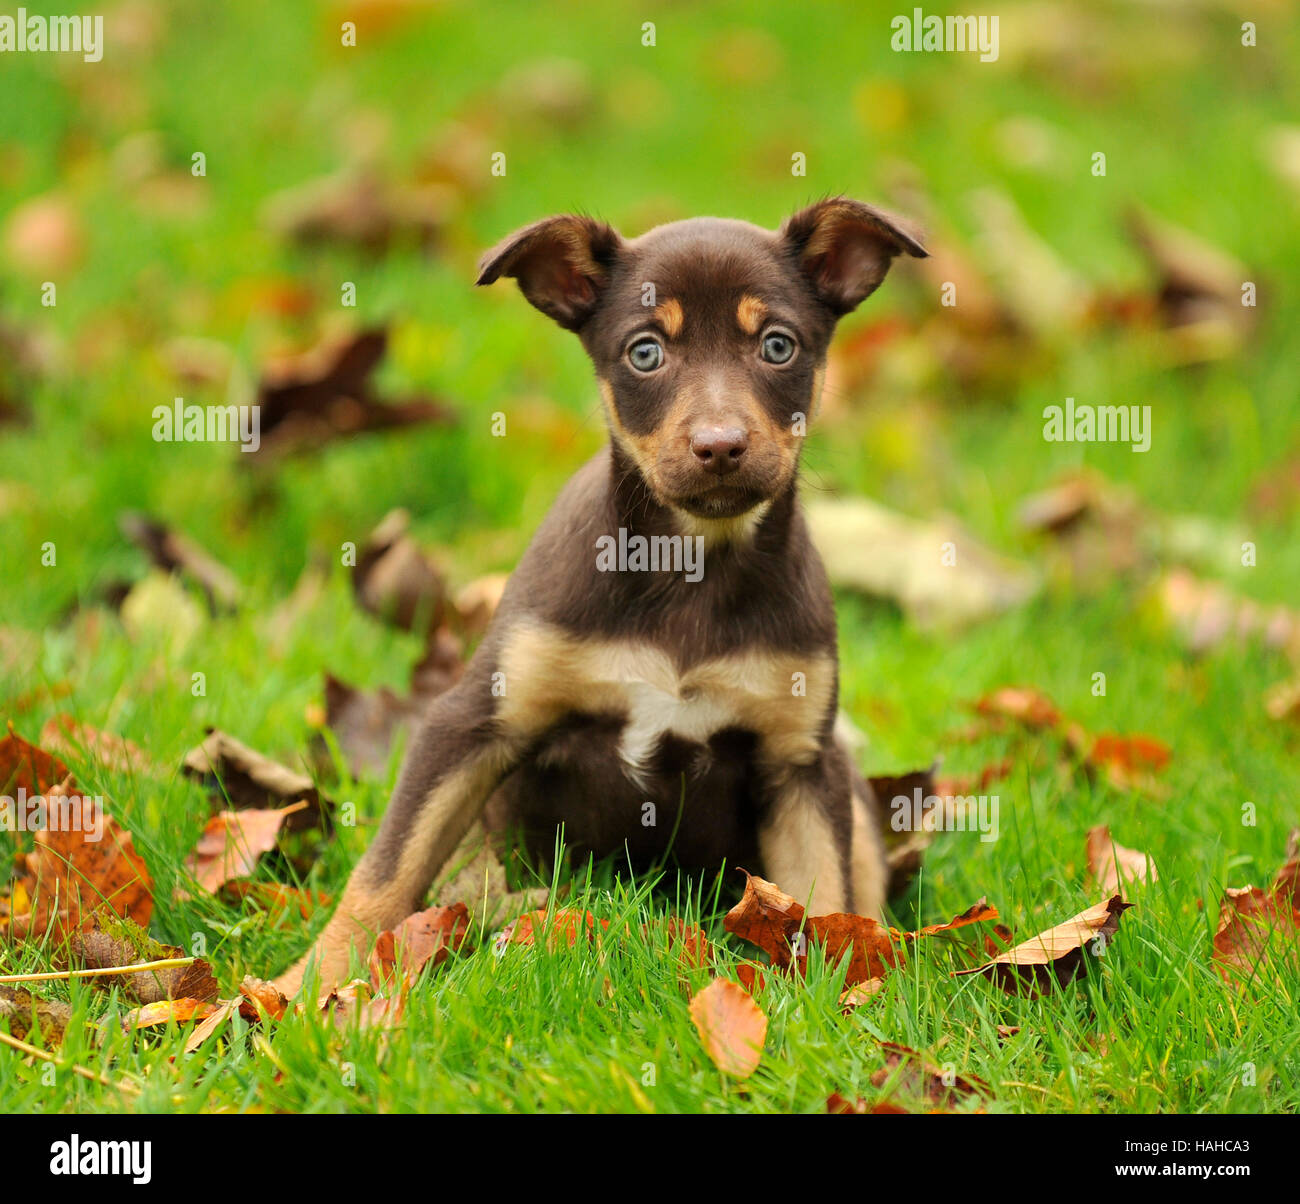 australian kelpie puppy Stock Photo - Alamy